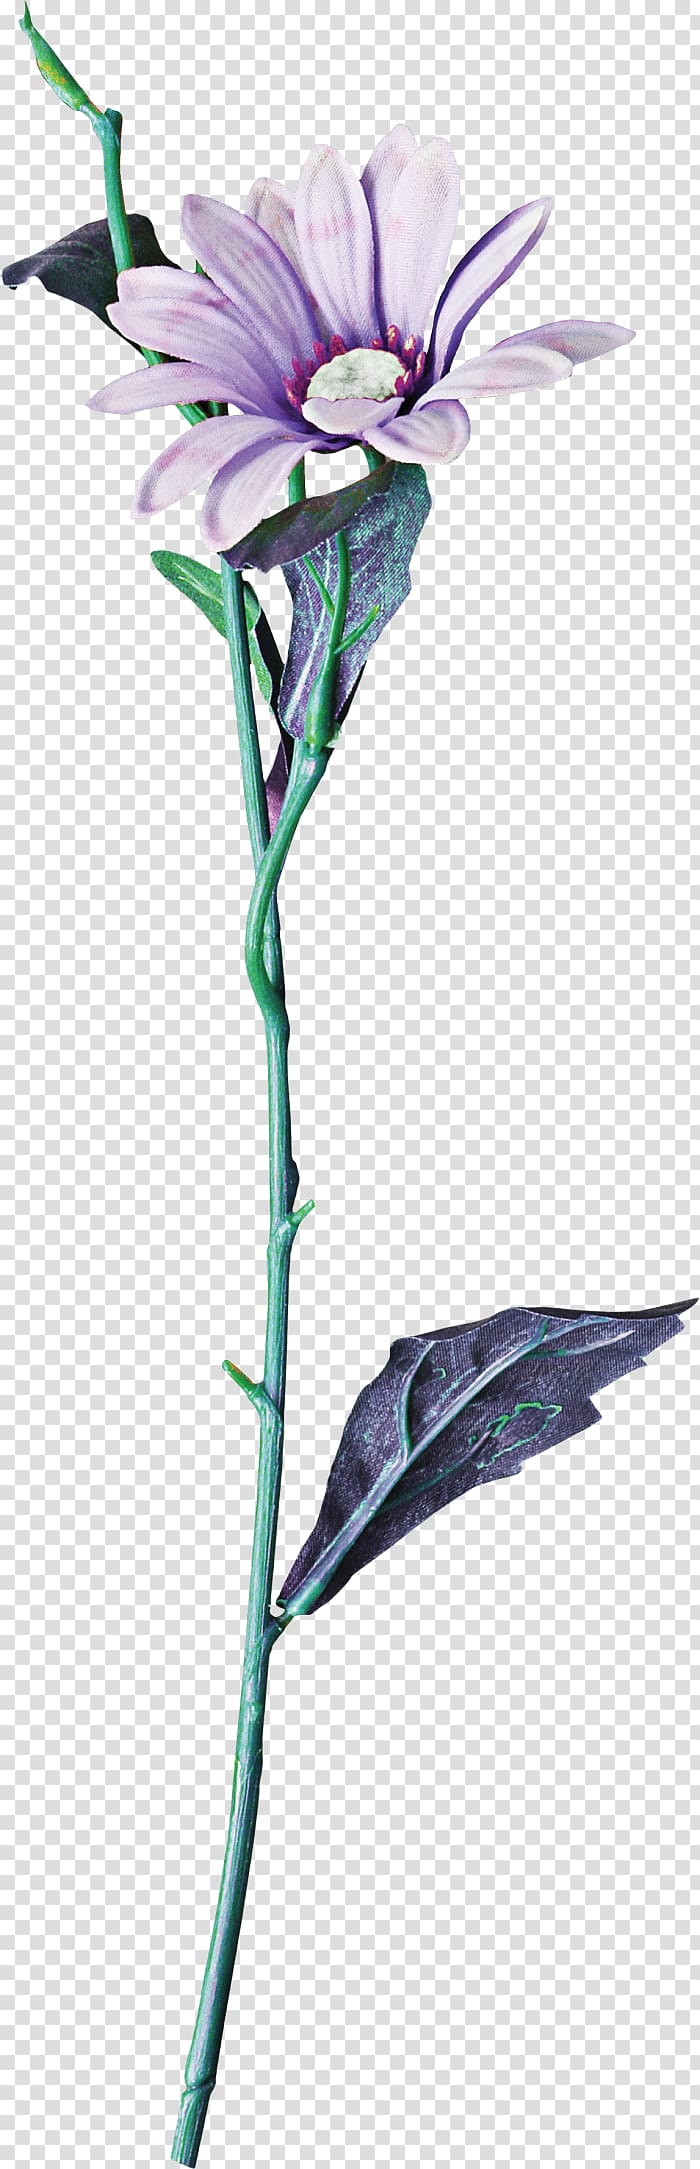 Cut flowers Floral design Branch Plant stem, Euclidean flower transparent background PNG clipart